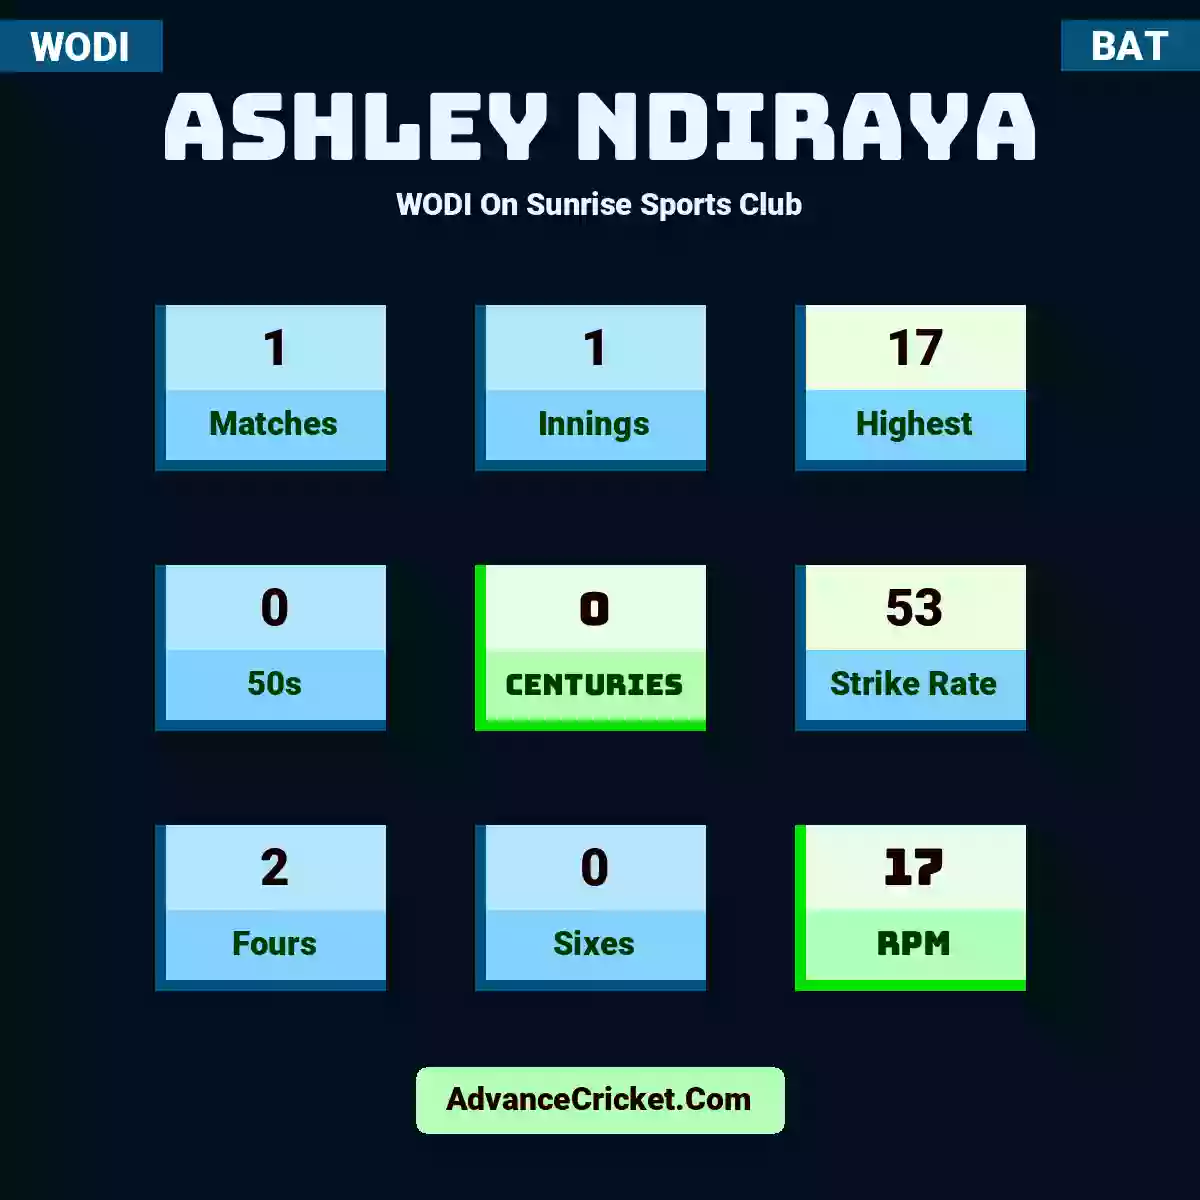 Ashley Ndiraya WODI  On Sunrise Sports Club, Ashley Ndiraya played 1 matches, scored 17 runs as highest, 0 half-centuries, and 0 centuries, with a strike rate of 53. A.Ndiraya hit 2 fours and 0 sixes, with an RPM of 17.